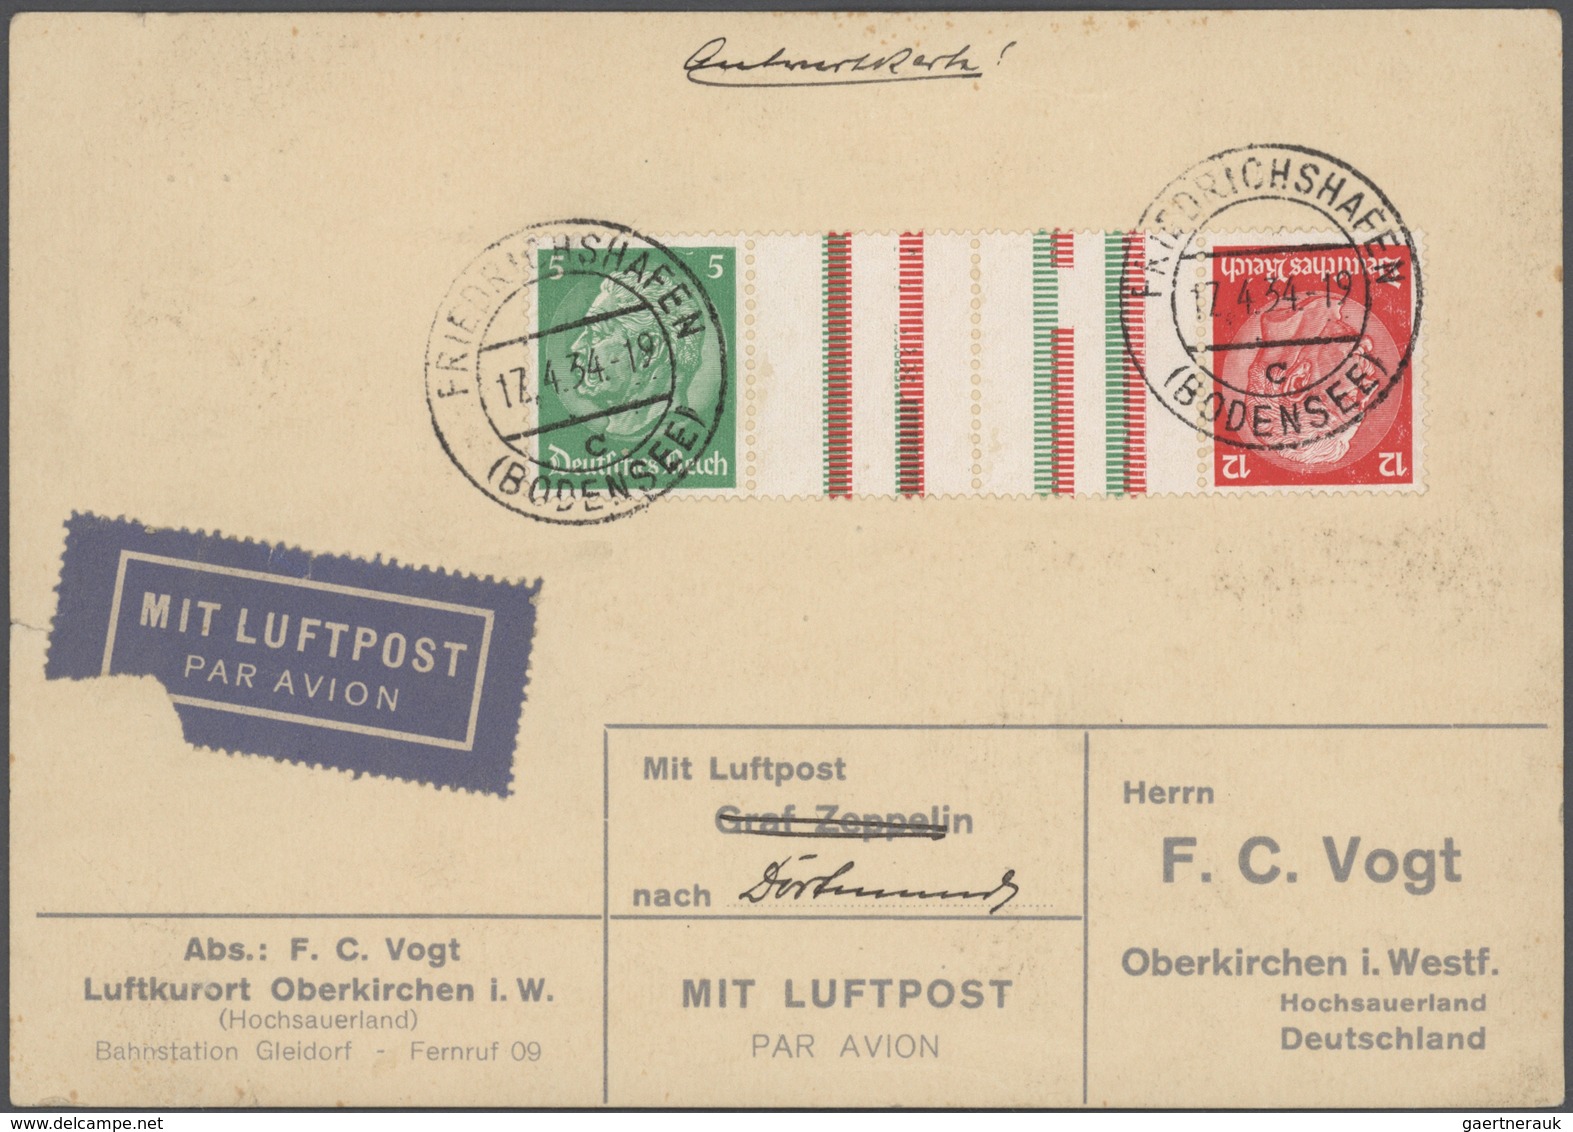 Europa: 1868/1944, kleine Schachtel mit ca 100 Briefen, Ansichtskarten u. Ganzsachen, überwiegend au